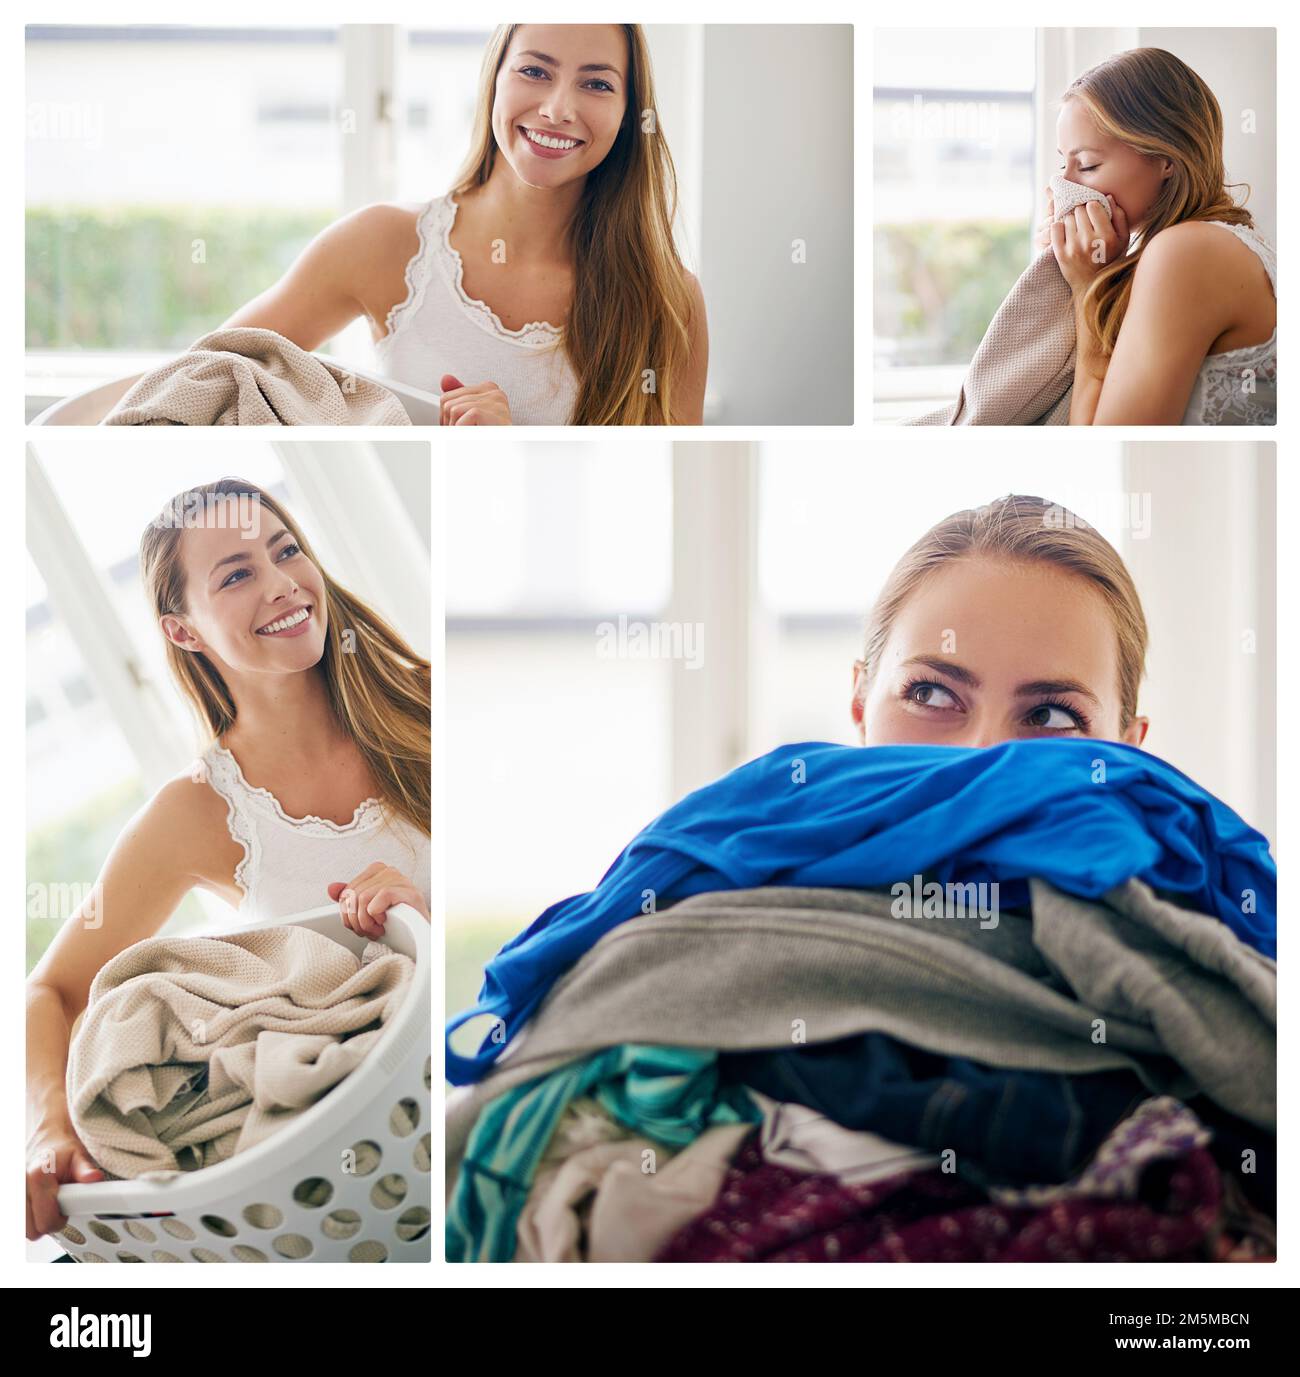 Theres nessun odore migliore che la lavanderia appena fatta. Immagine composita di una giovane donna che fa il bucato a casa. Foto Stock